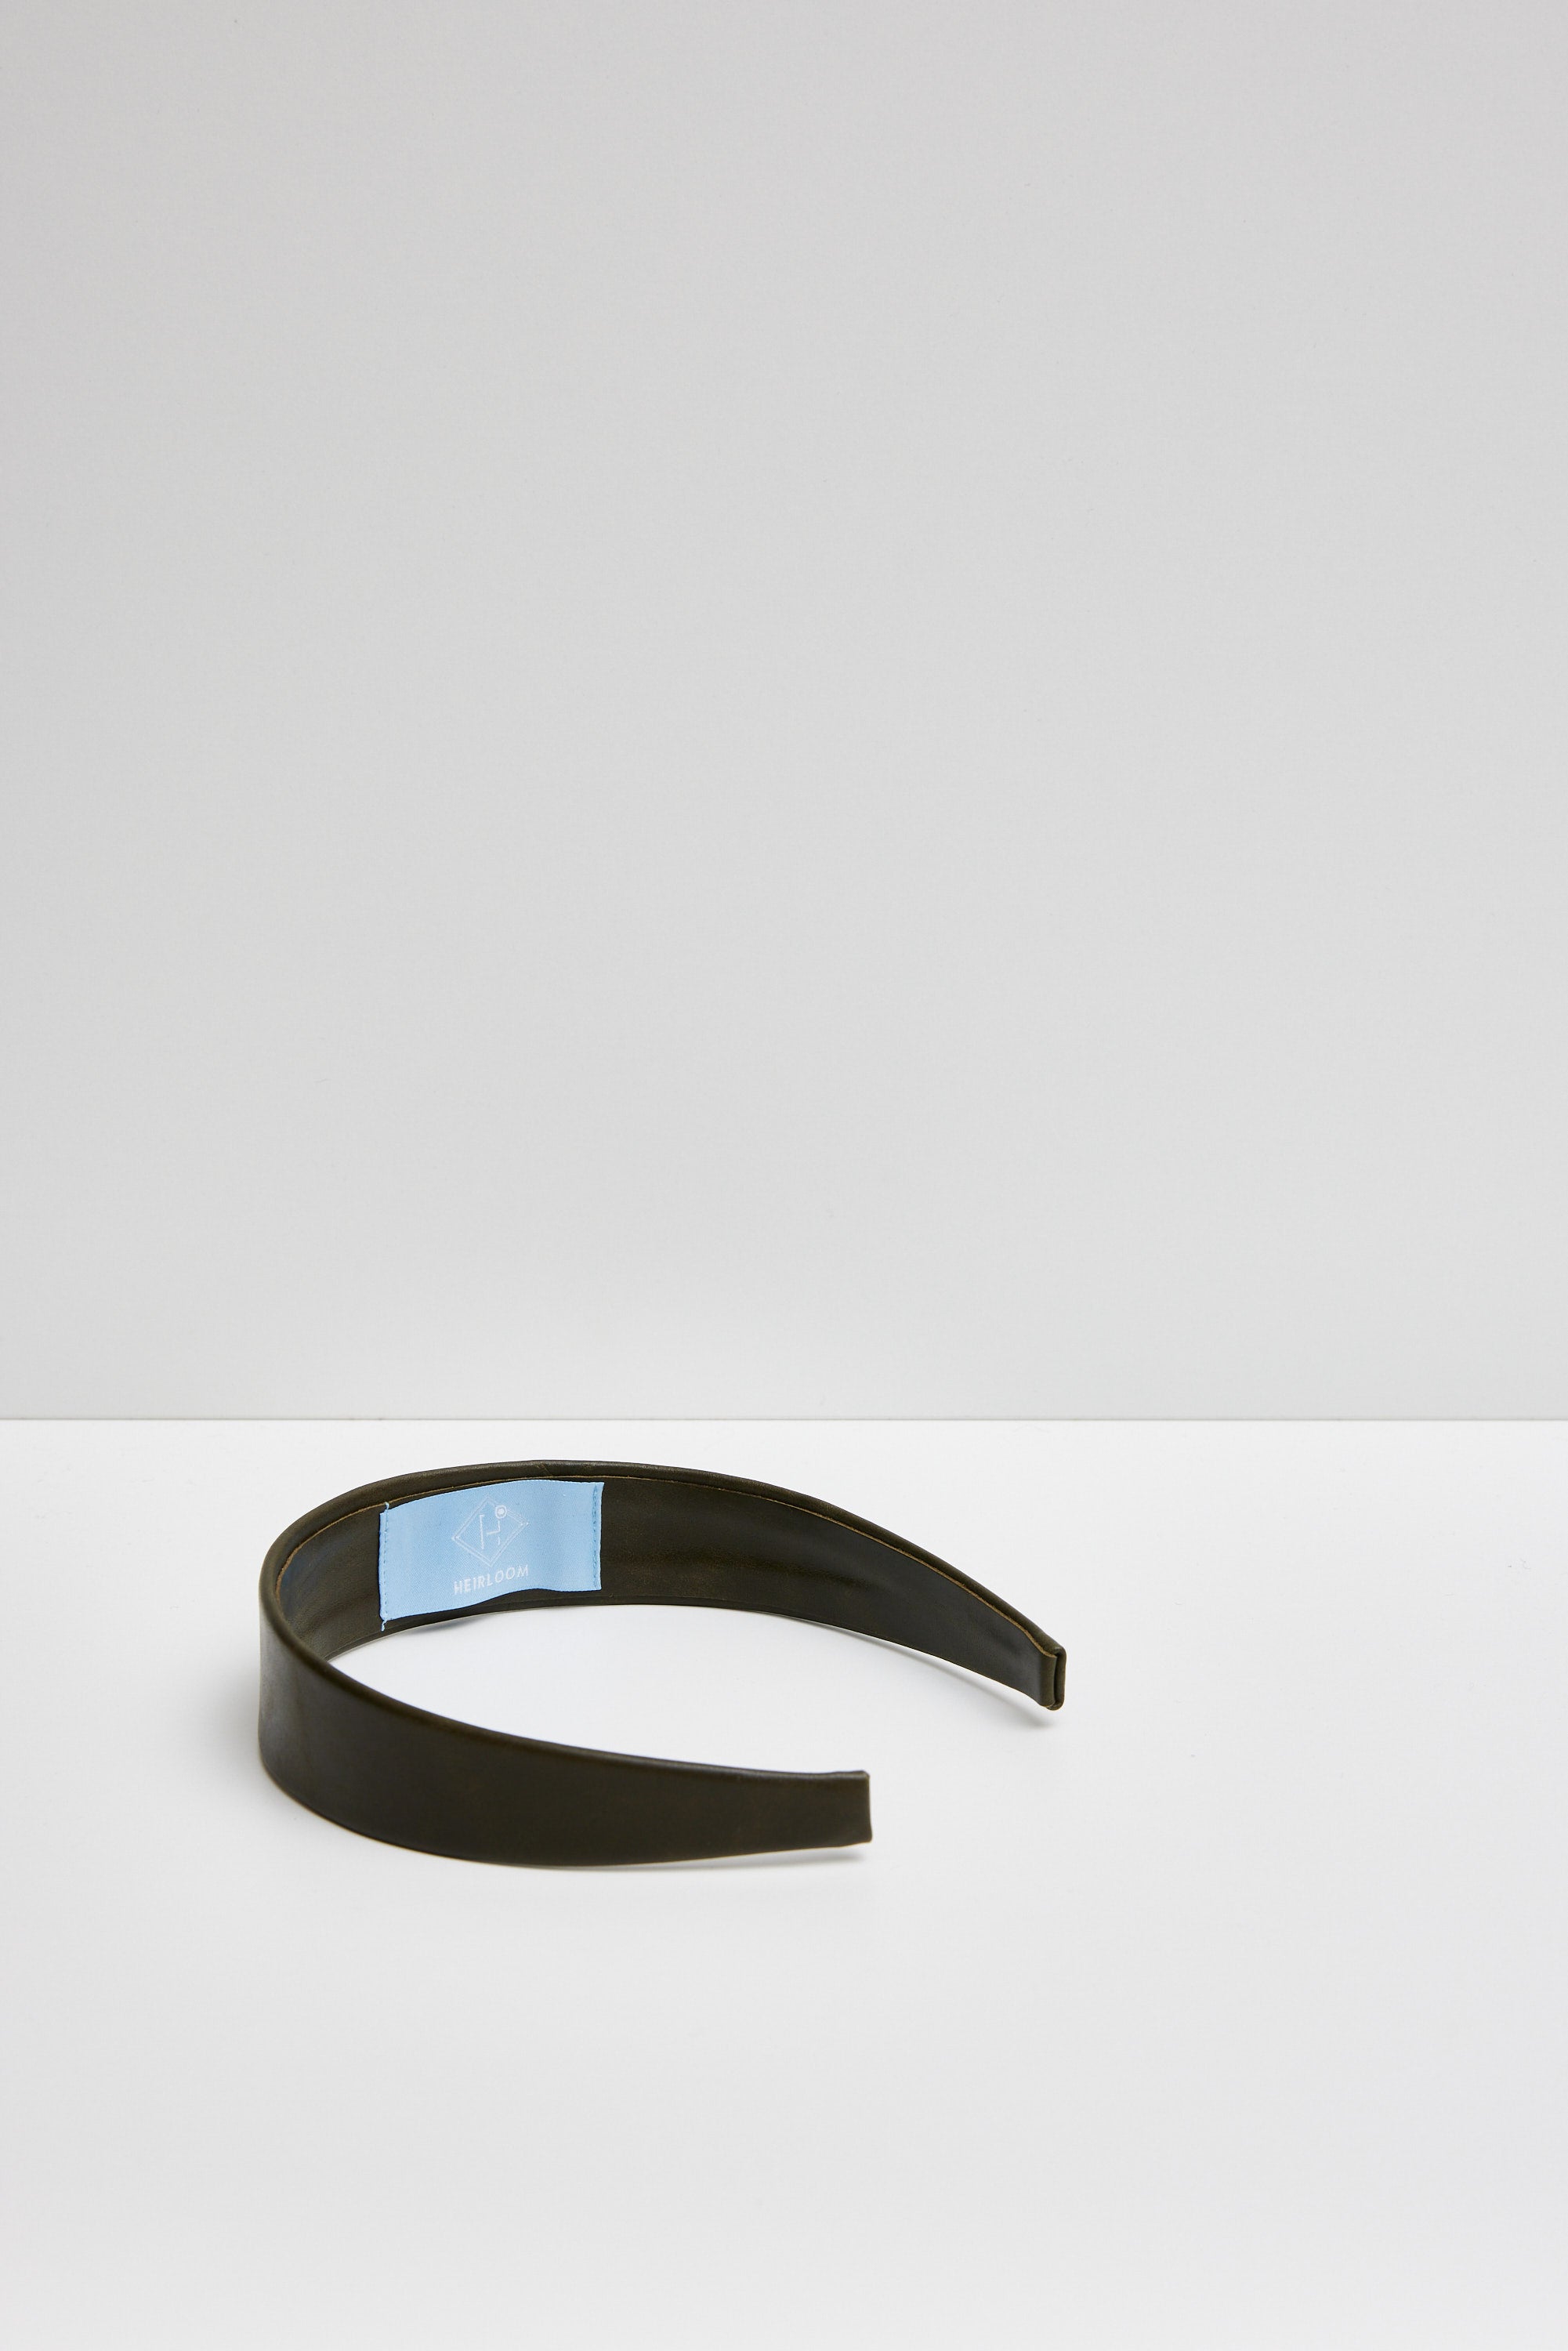 Silken - minimalist leather headband - 4 colour options